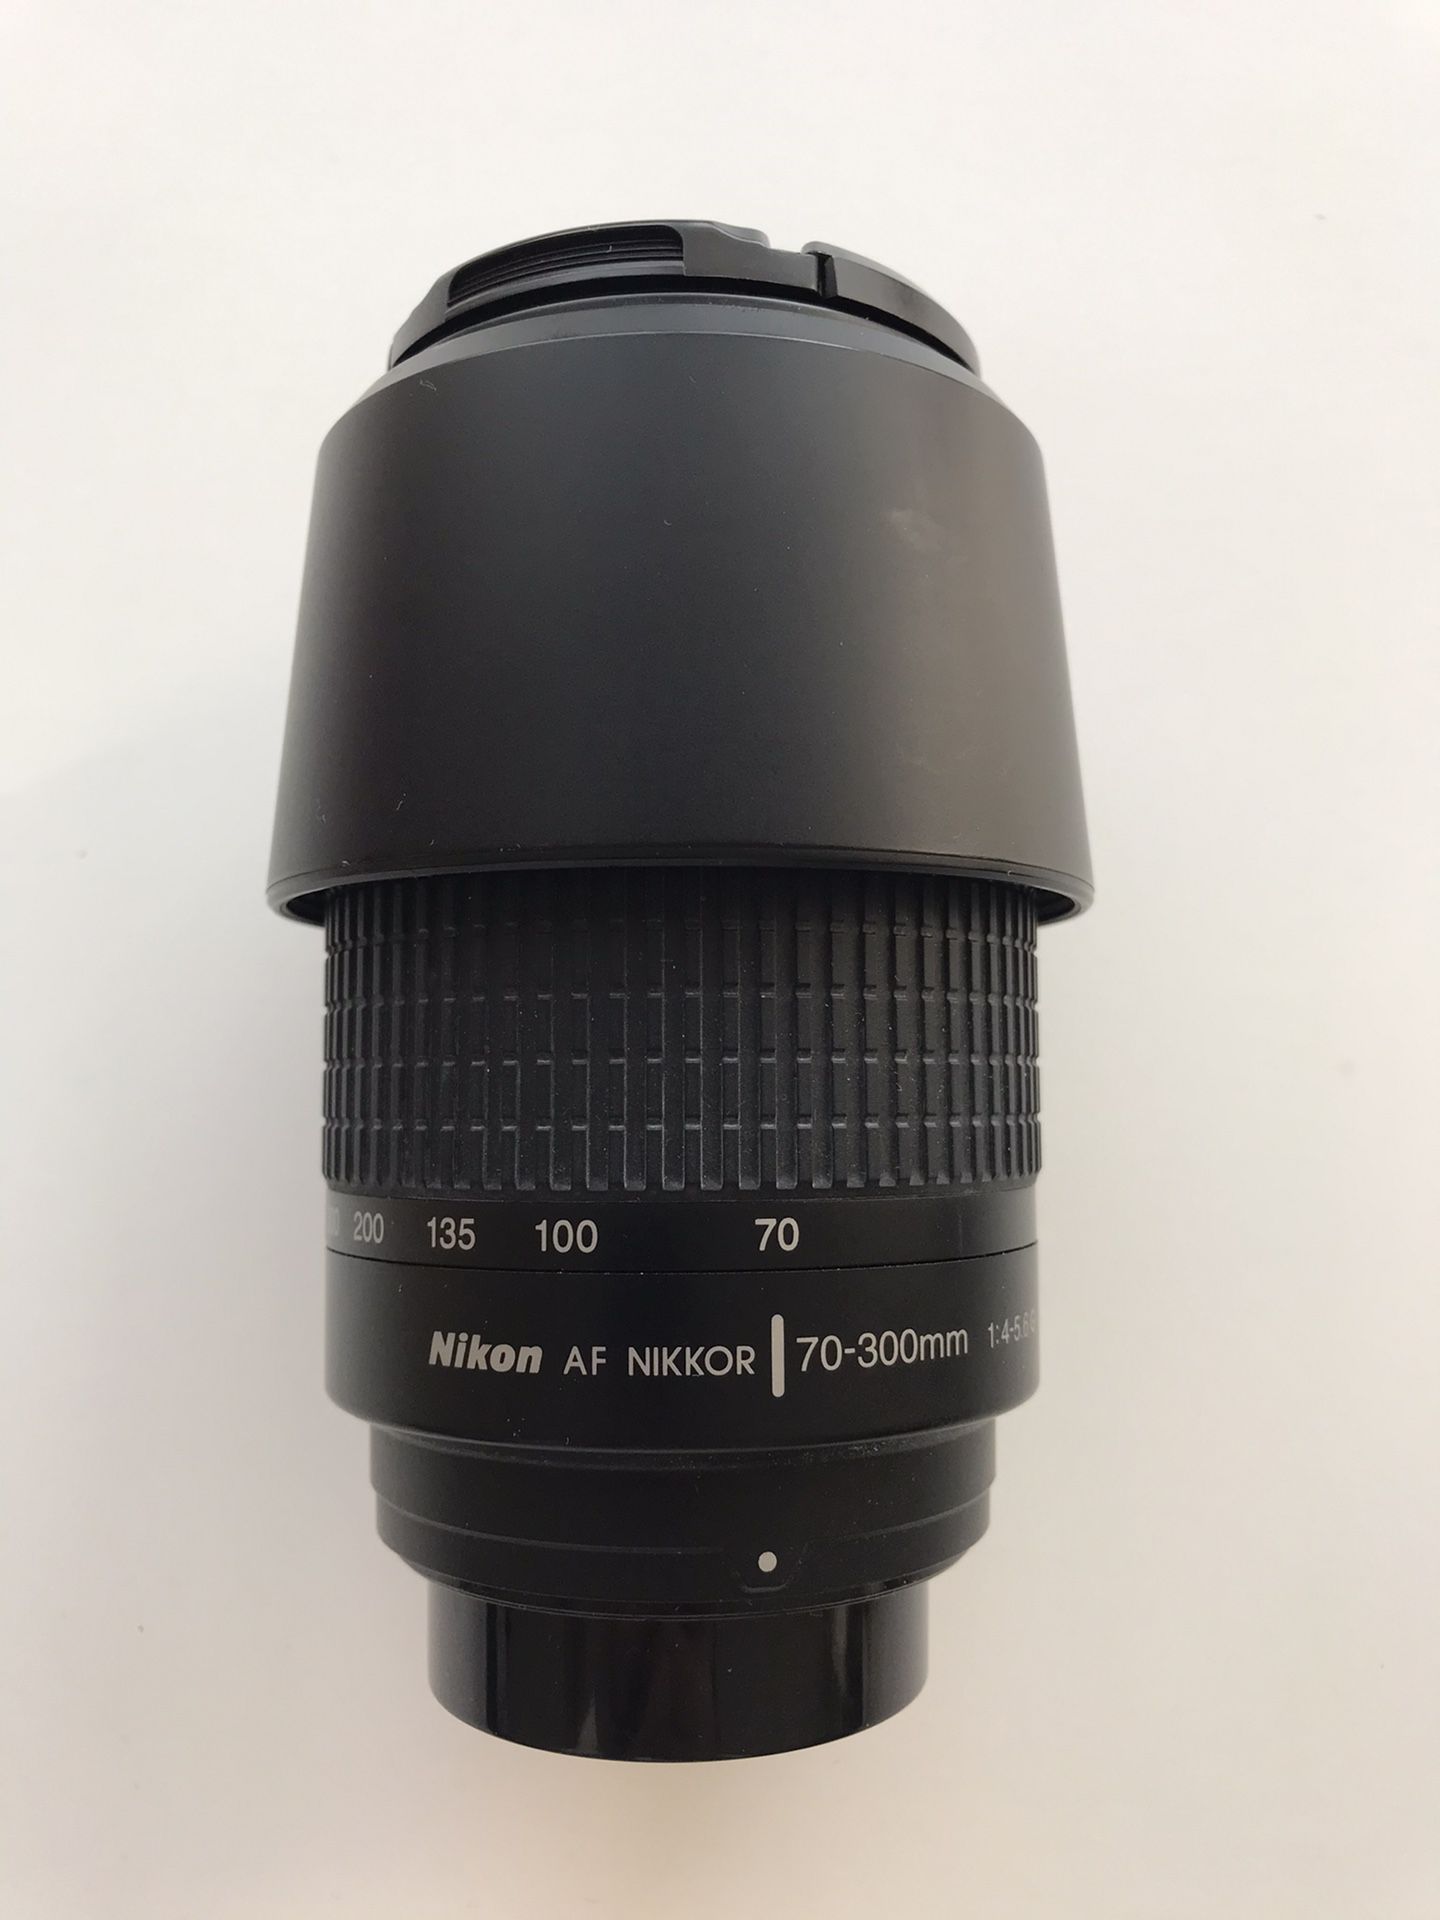 Nikon Nikkor AF 70-300mm f/4-5.6 Full Frame Lens with Nikon hood